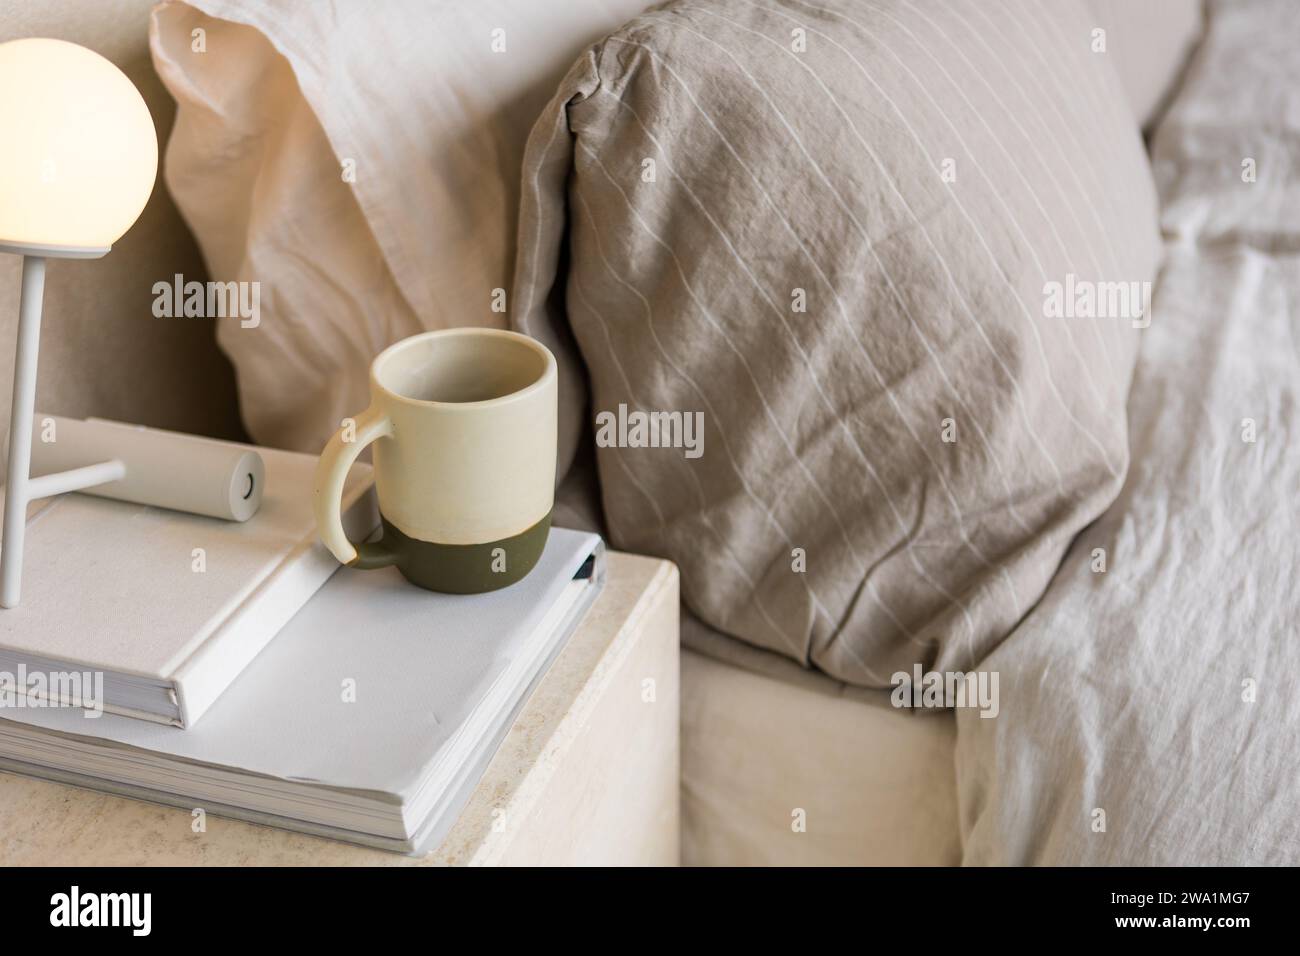 Keramikbecher auf Büchern neben einem ästhetischen Bett schafft eine ruhige Szene Stockfoto